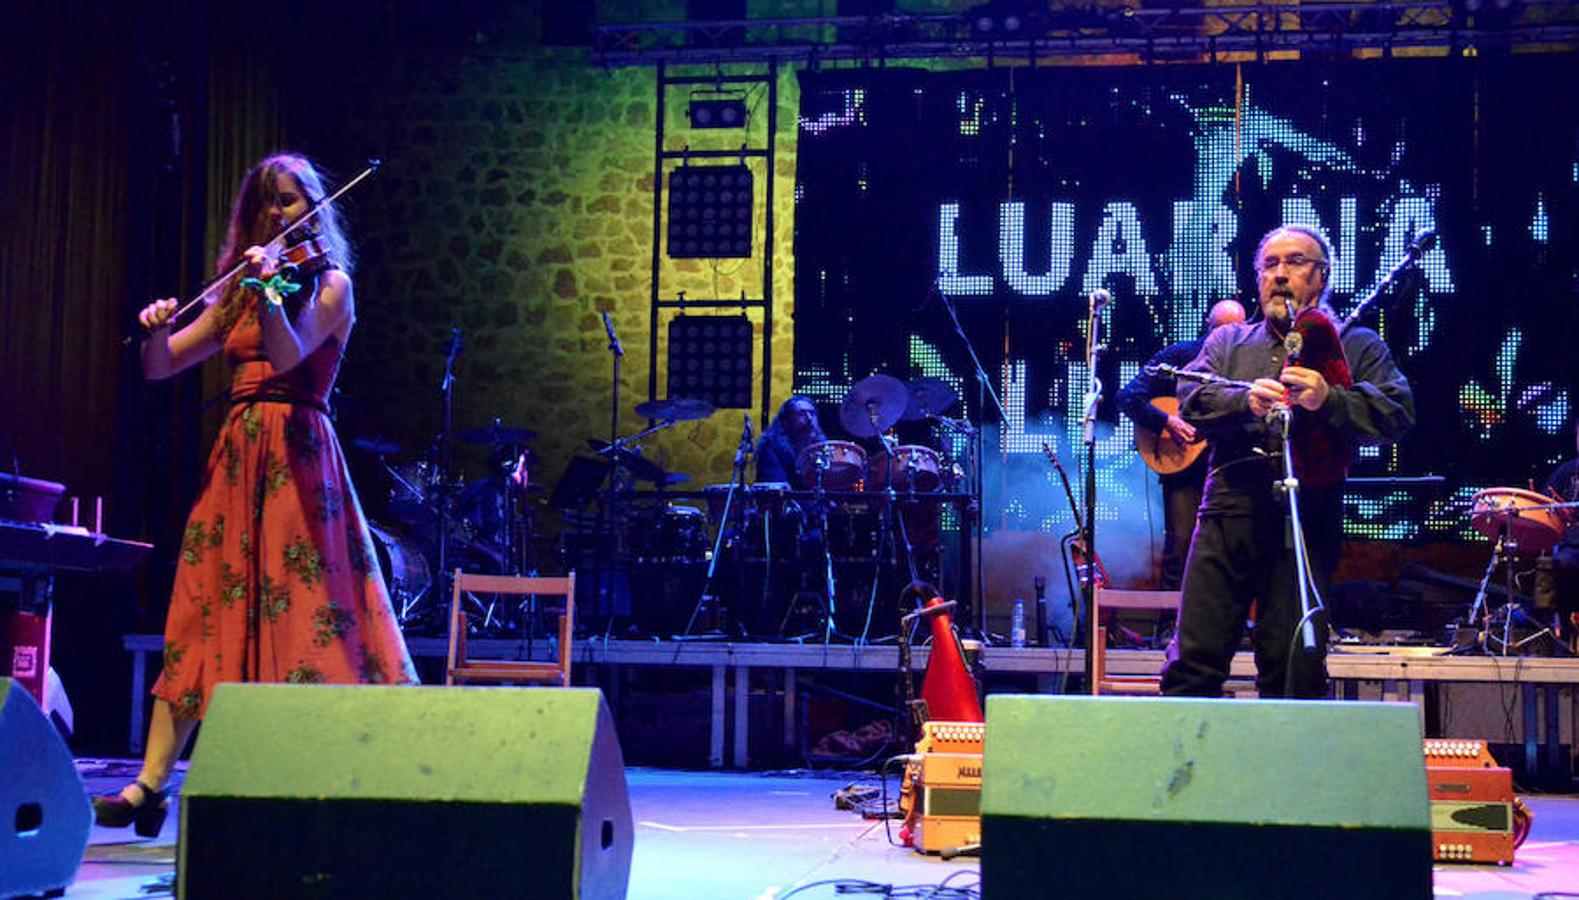 El festival placentino, que se ha convertido por méritos propios en una de las citas de música folk más importantes del estío español.